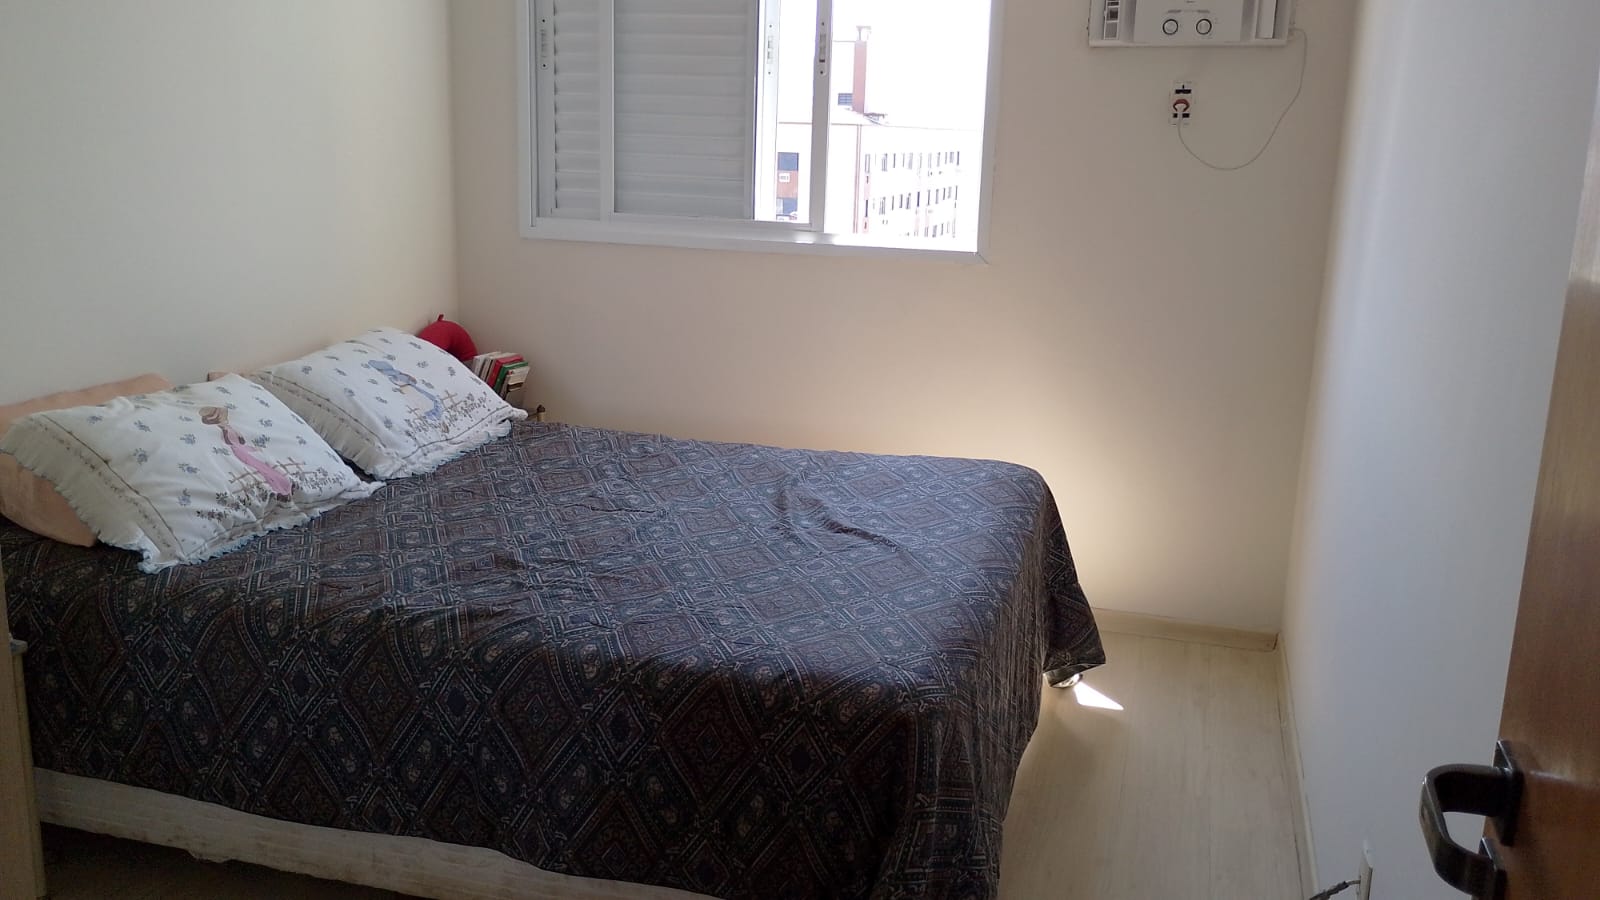 Apartamento Boqueirao 2 dormitorios 1 suite -Sala 2 ambientes com varanda – 2 garagens e lazer - foto 14